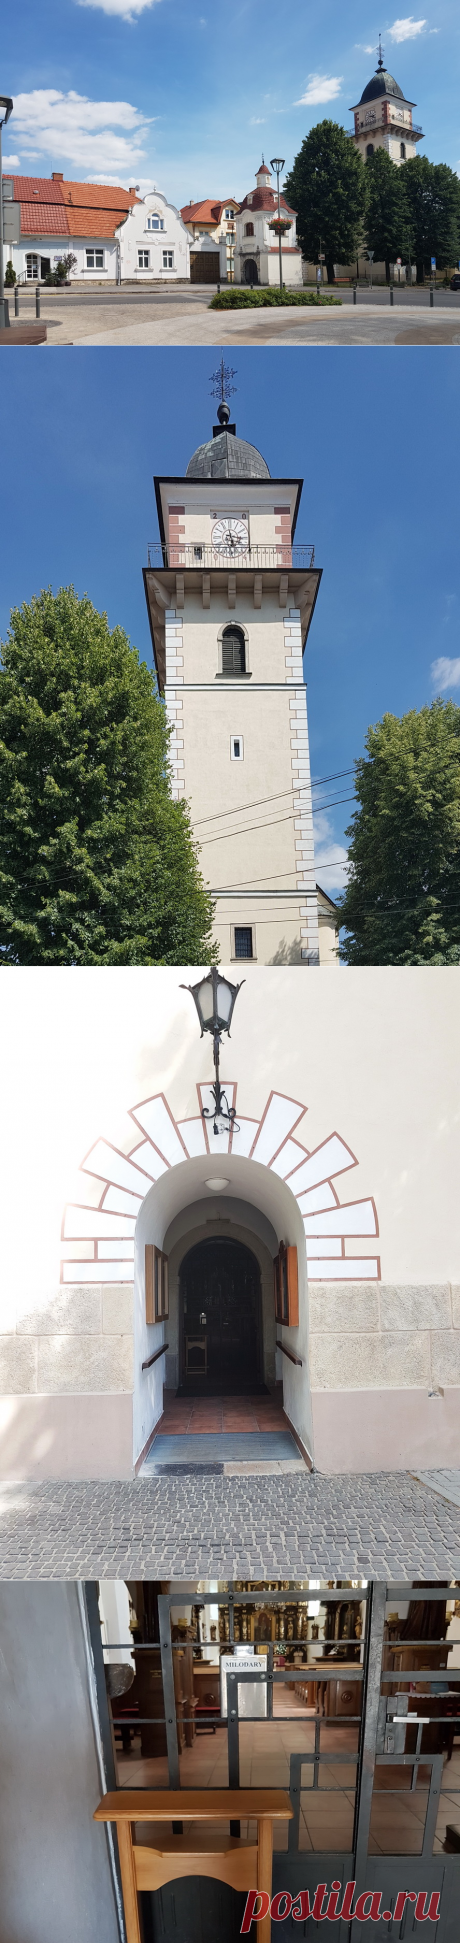 Костел святого Мартина и часовня святого Иоанна Непомуцкого в г. Бойнице (Словакия)